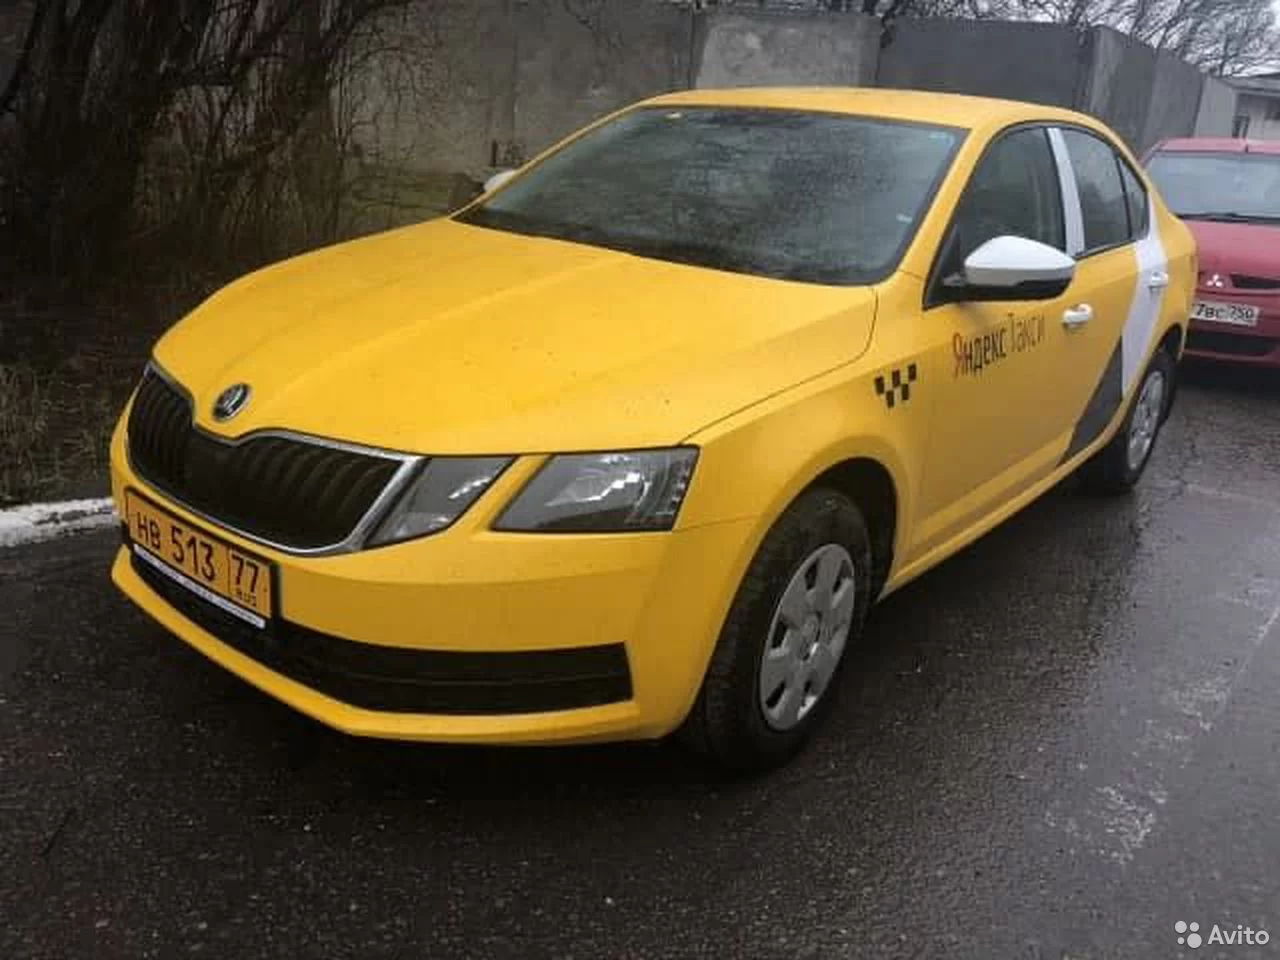 Руководитель Яндекс такси